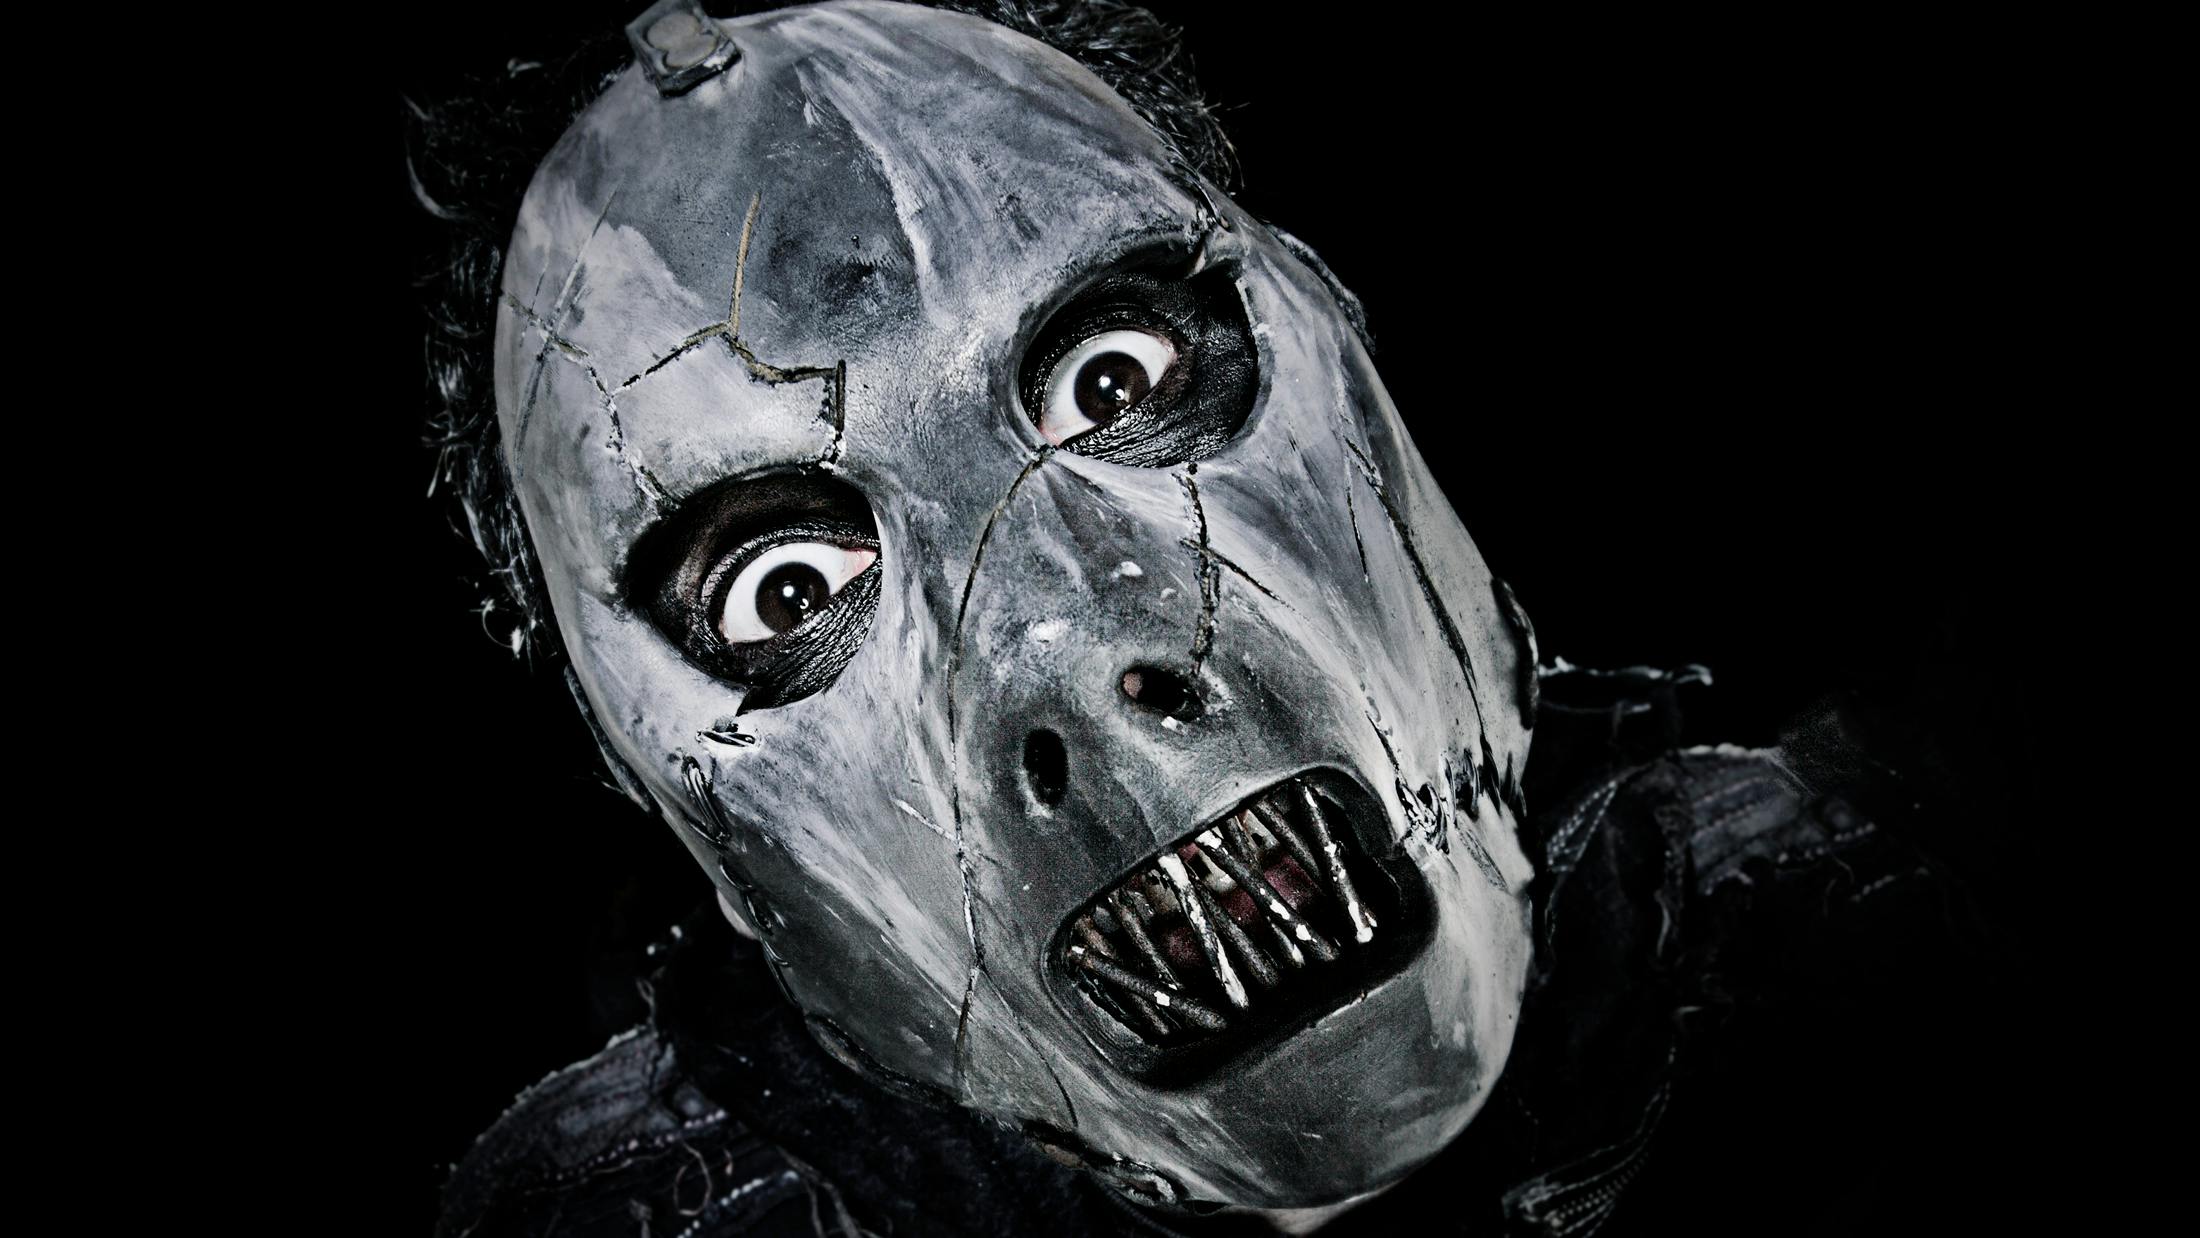 Slipknot: Paul Gray’s 10 best songs